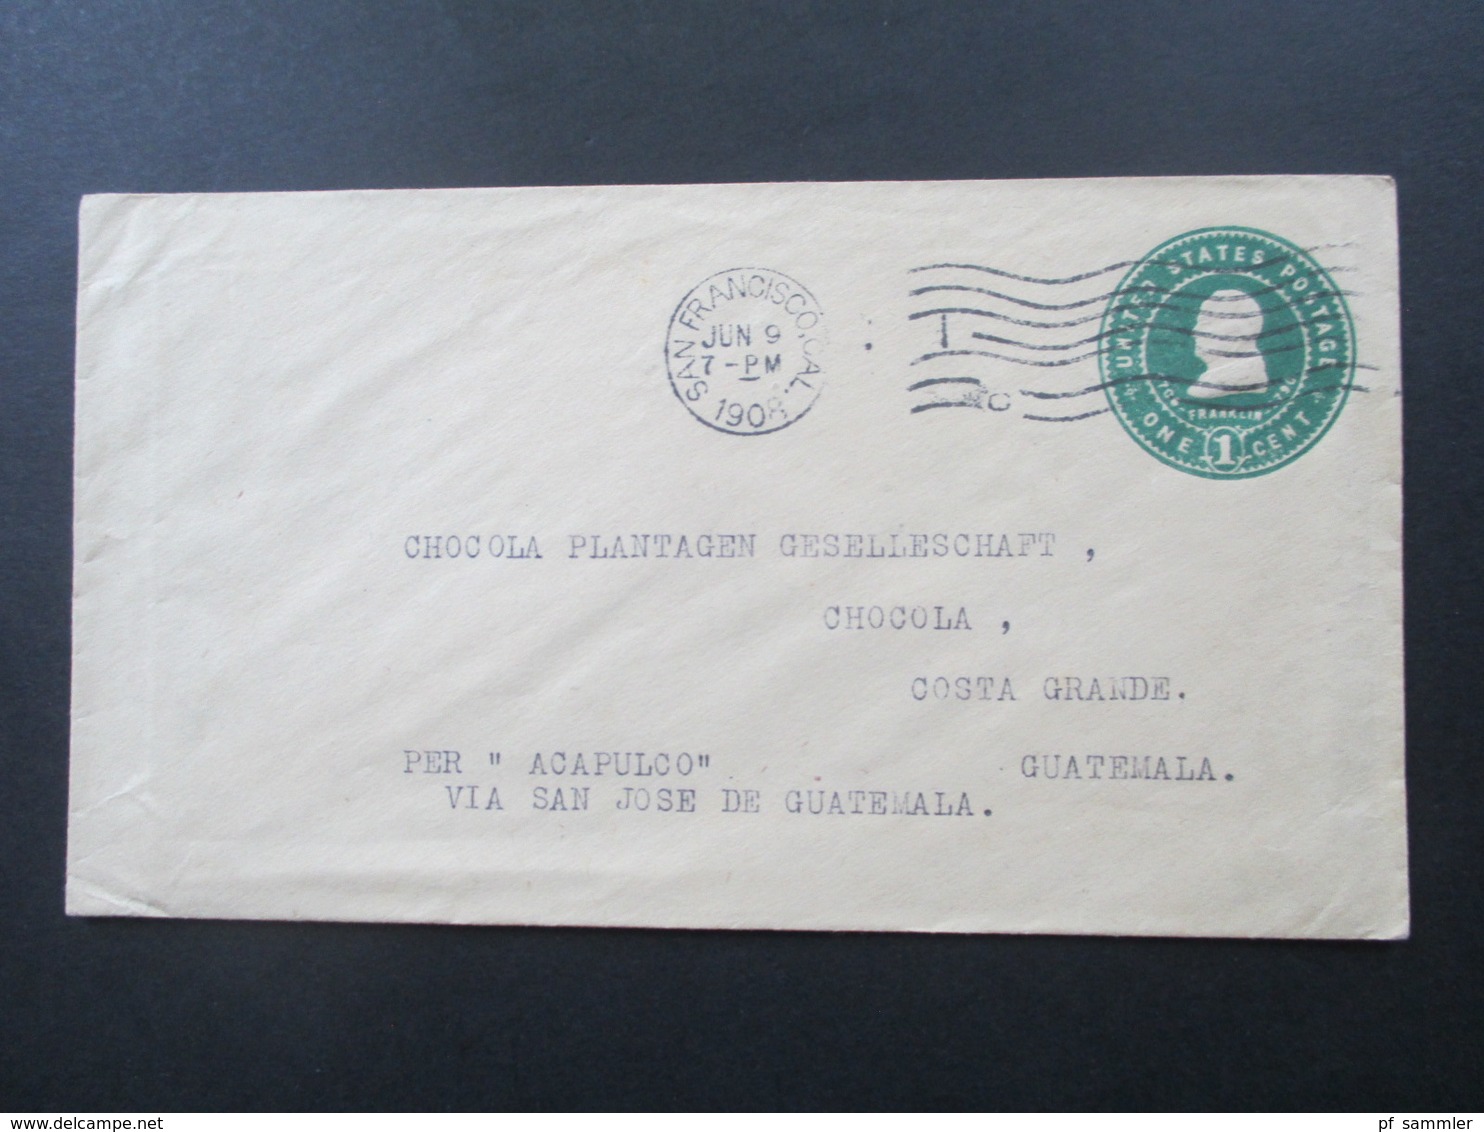 USA 1893 - 1932 Belege / Ganzsachen teilw, nach Guatemala Plantagen Gesellschaft mit Transit Stempel. Stöberposten!